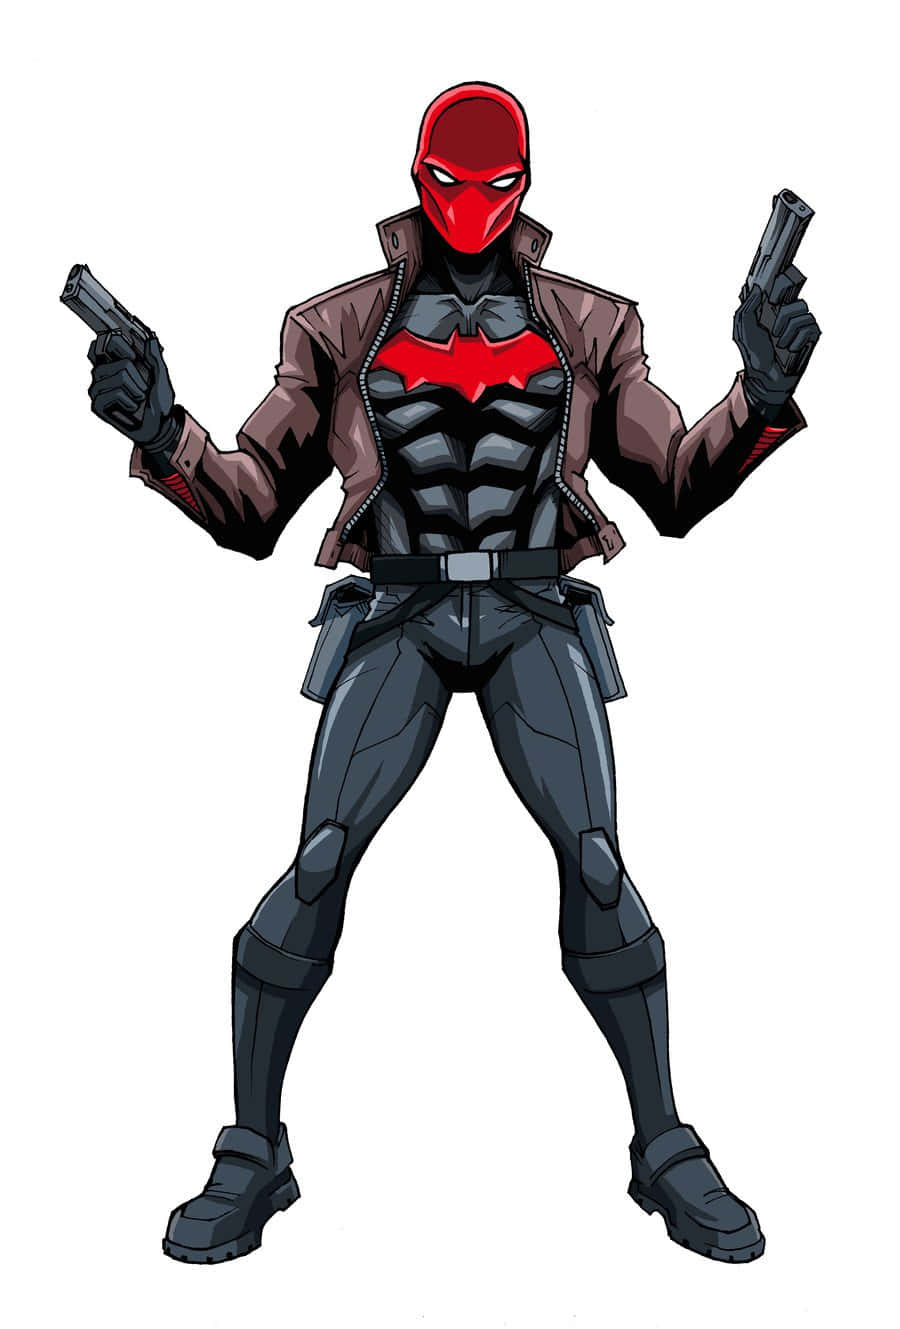 Protegiendoa Los Inocentes En La Ciudad De Gotham - Red Hood